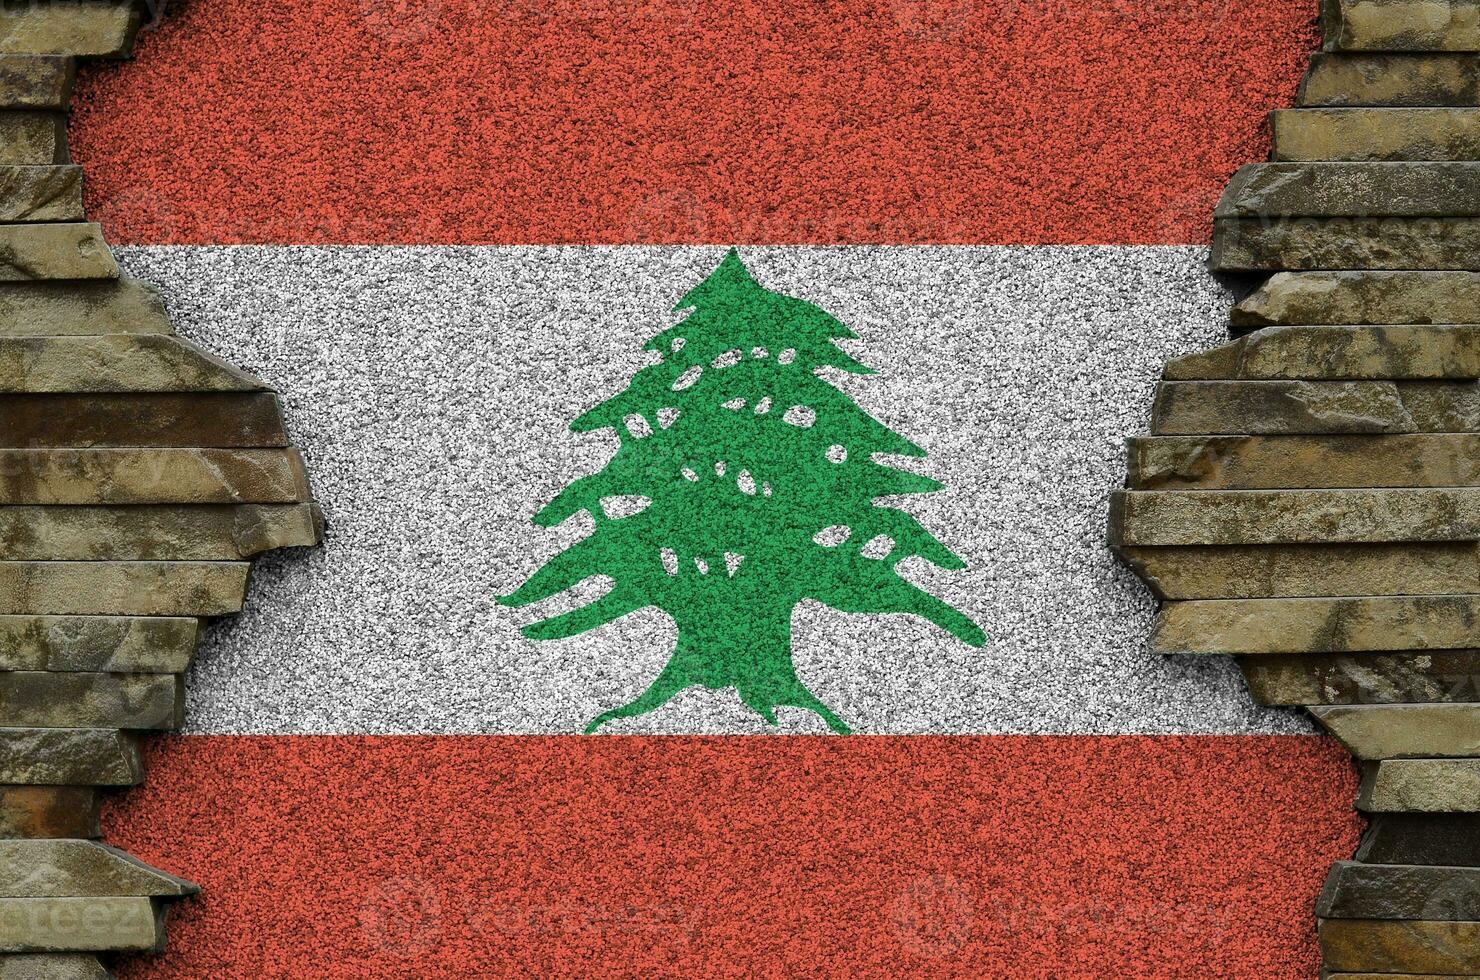 libanon flagga avbildad i måla färger på gammal sten vägg närbild. texturerad baner på sten vägg bakgrund foto